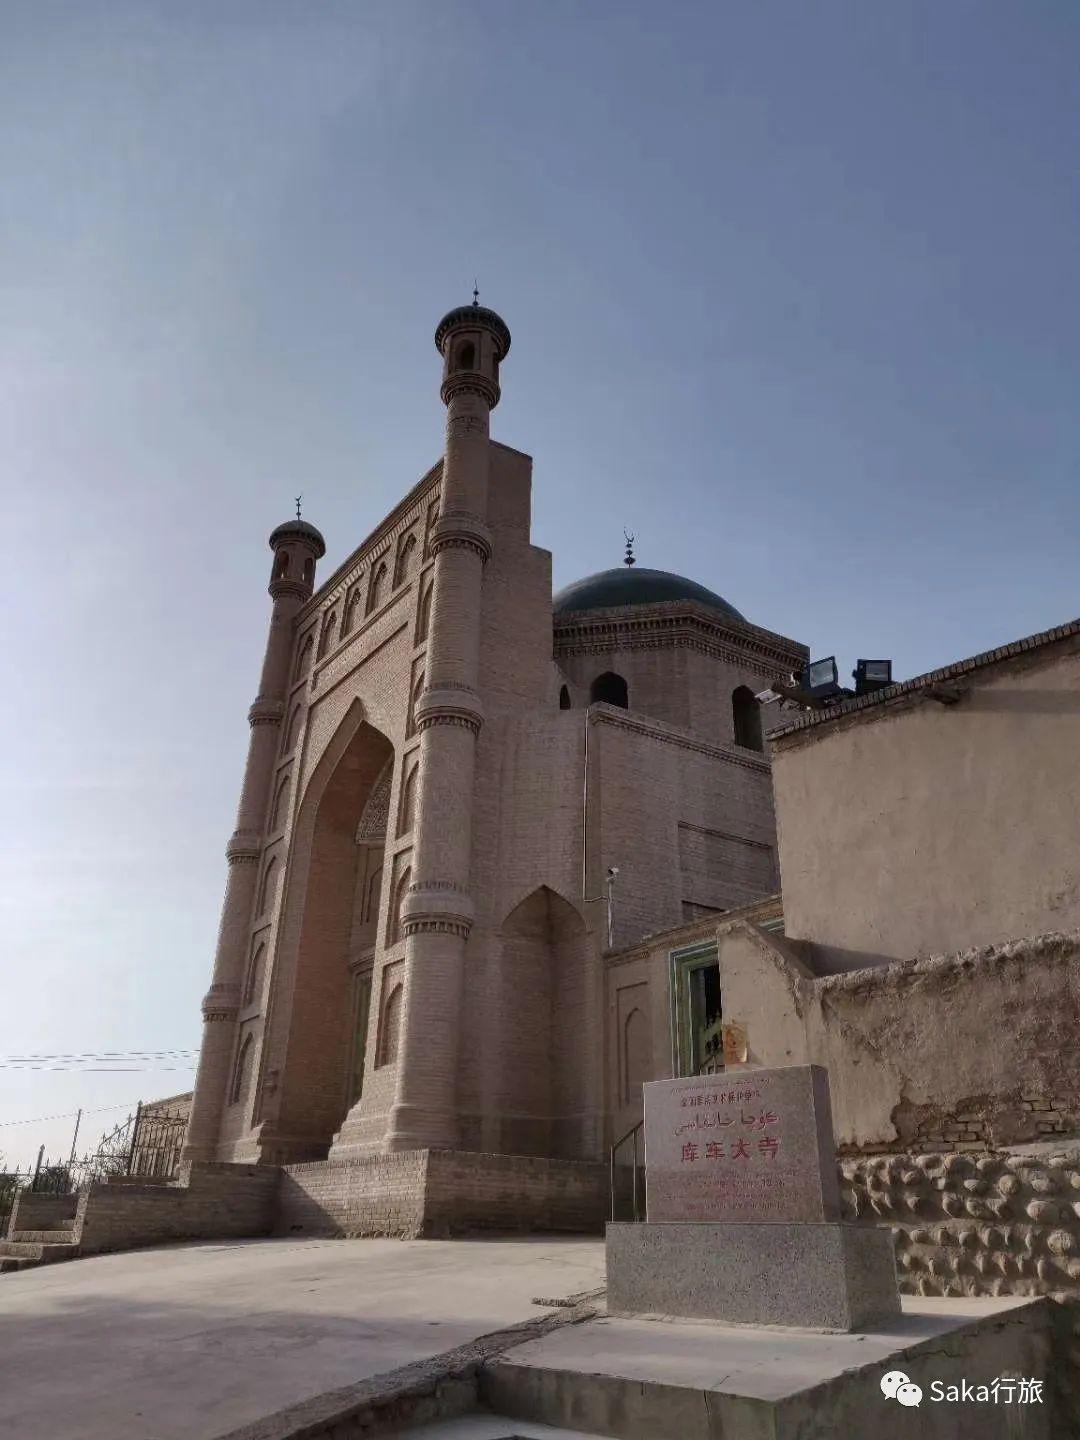 它是在波斯中亚伊斯兰建筑基础上融合了新疆本地建筑文化传统而创造出